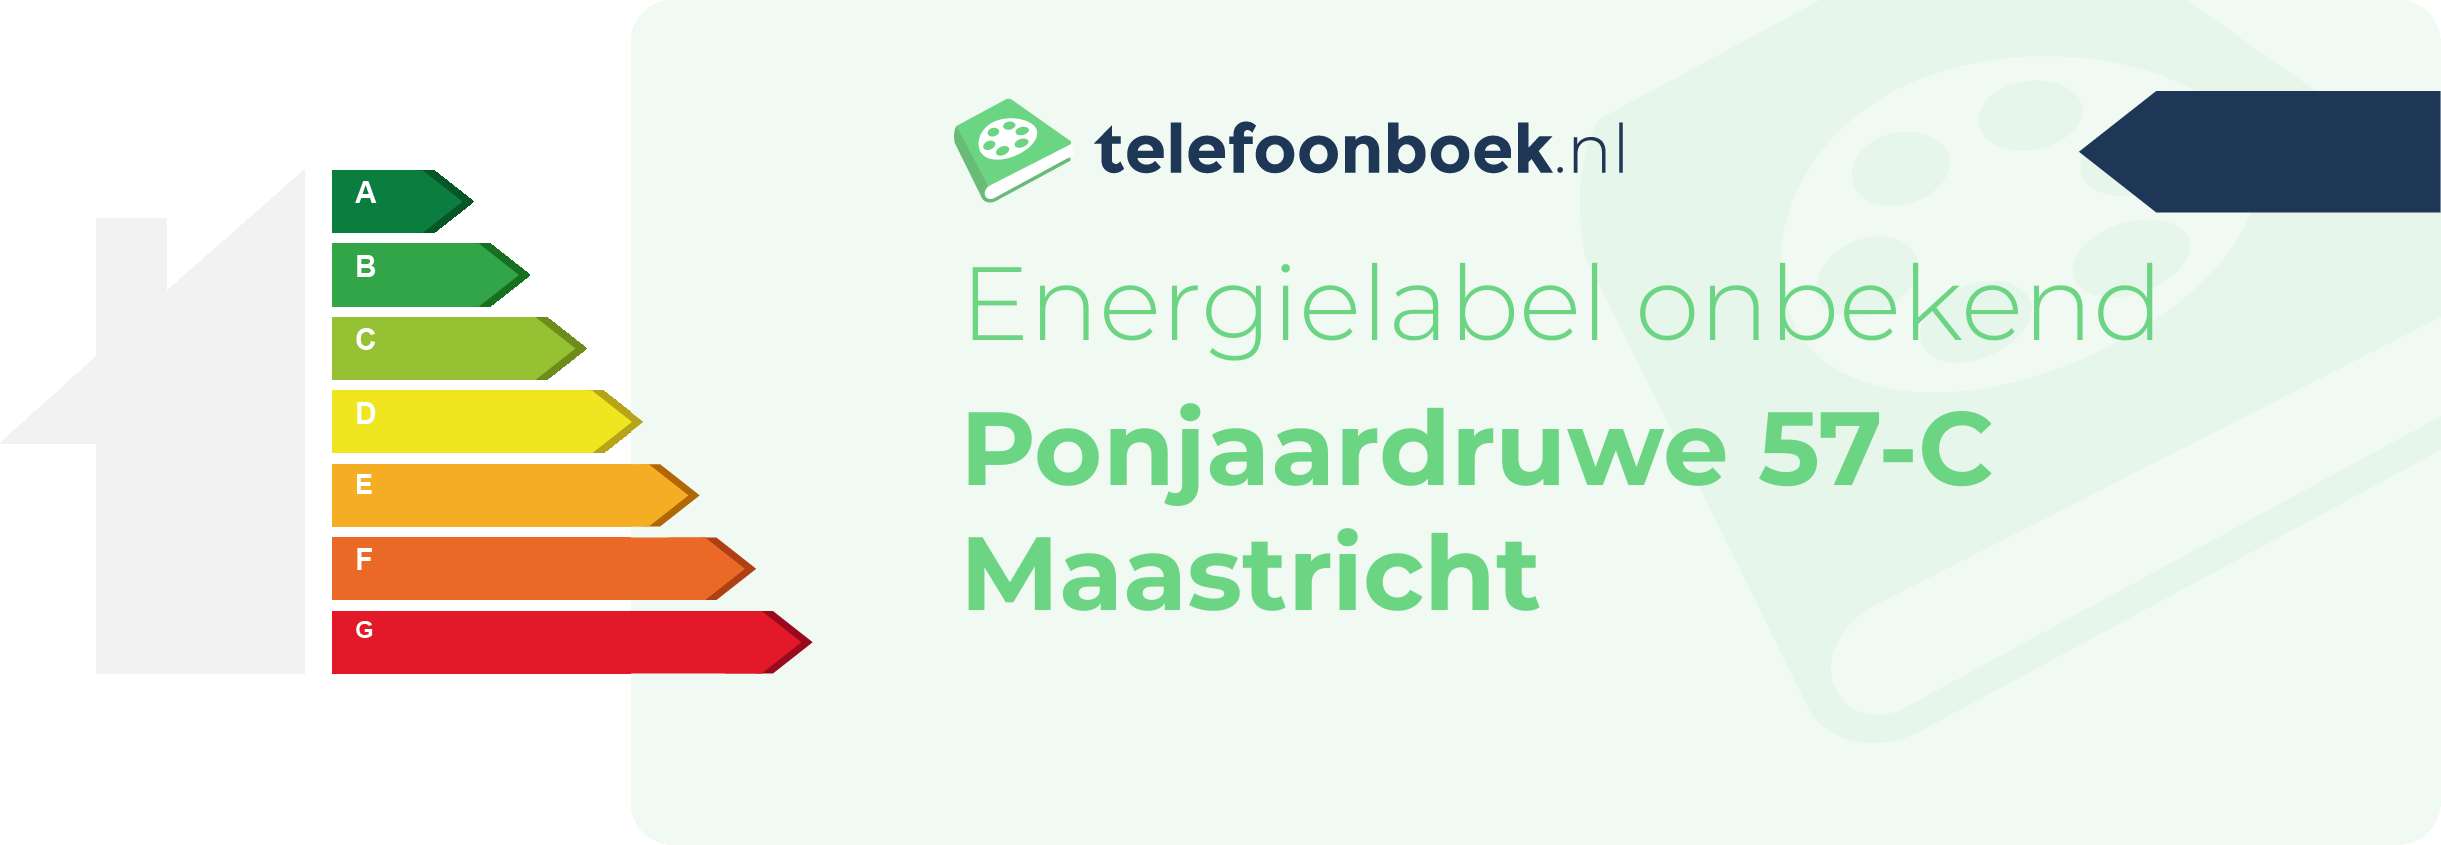 Energielabel Ponjaardruwe 57-C Maastricht